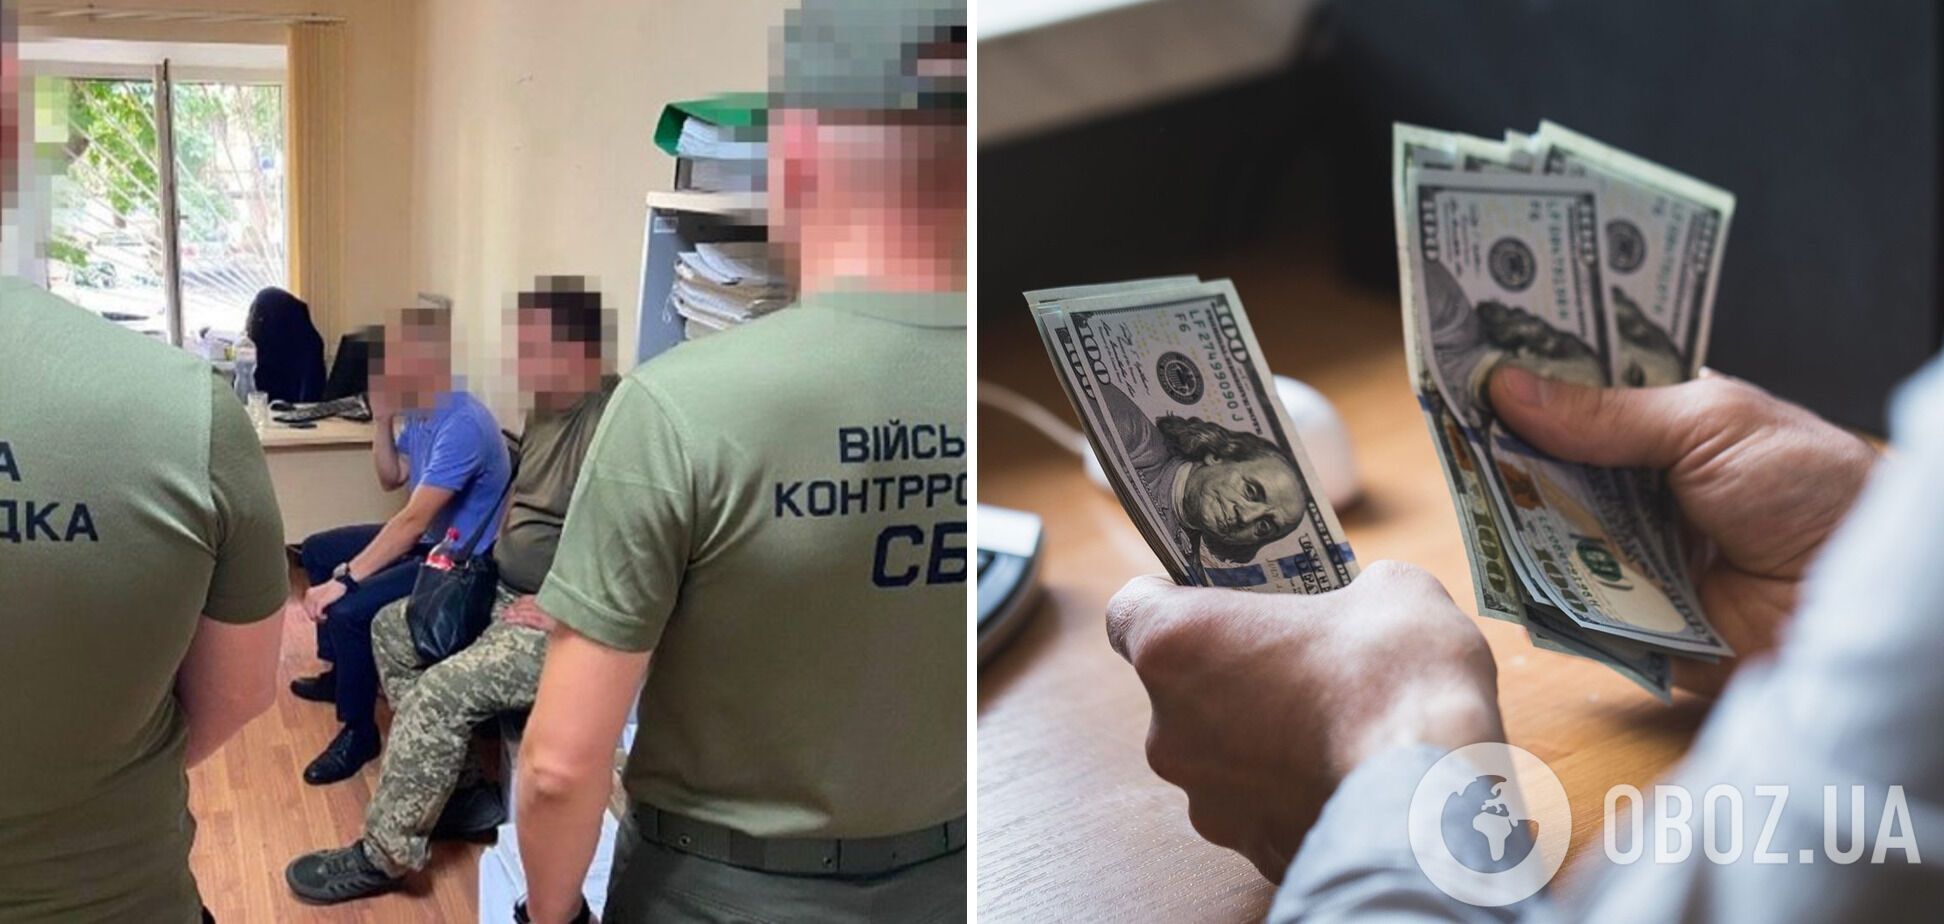 В Одесской области задержали военного бухгалтера, который присвоил более 10 млн грн из зарплат морпехов